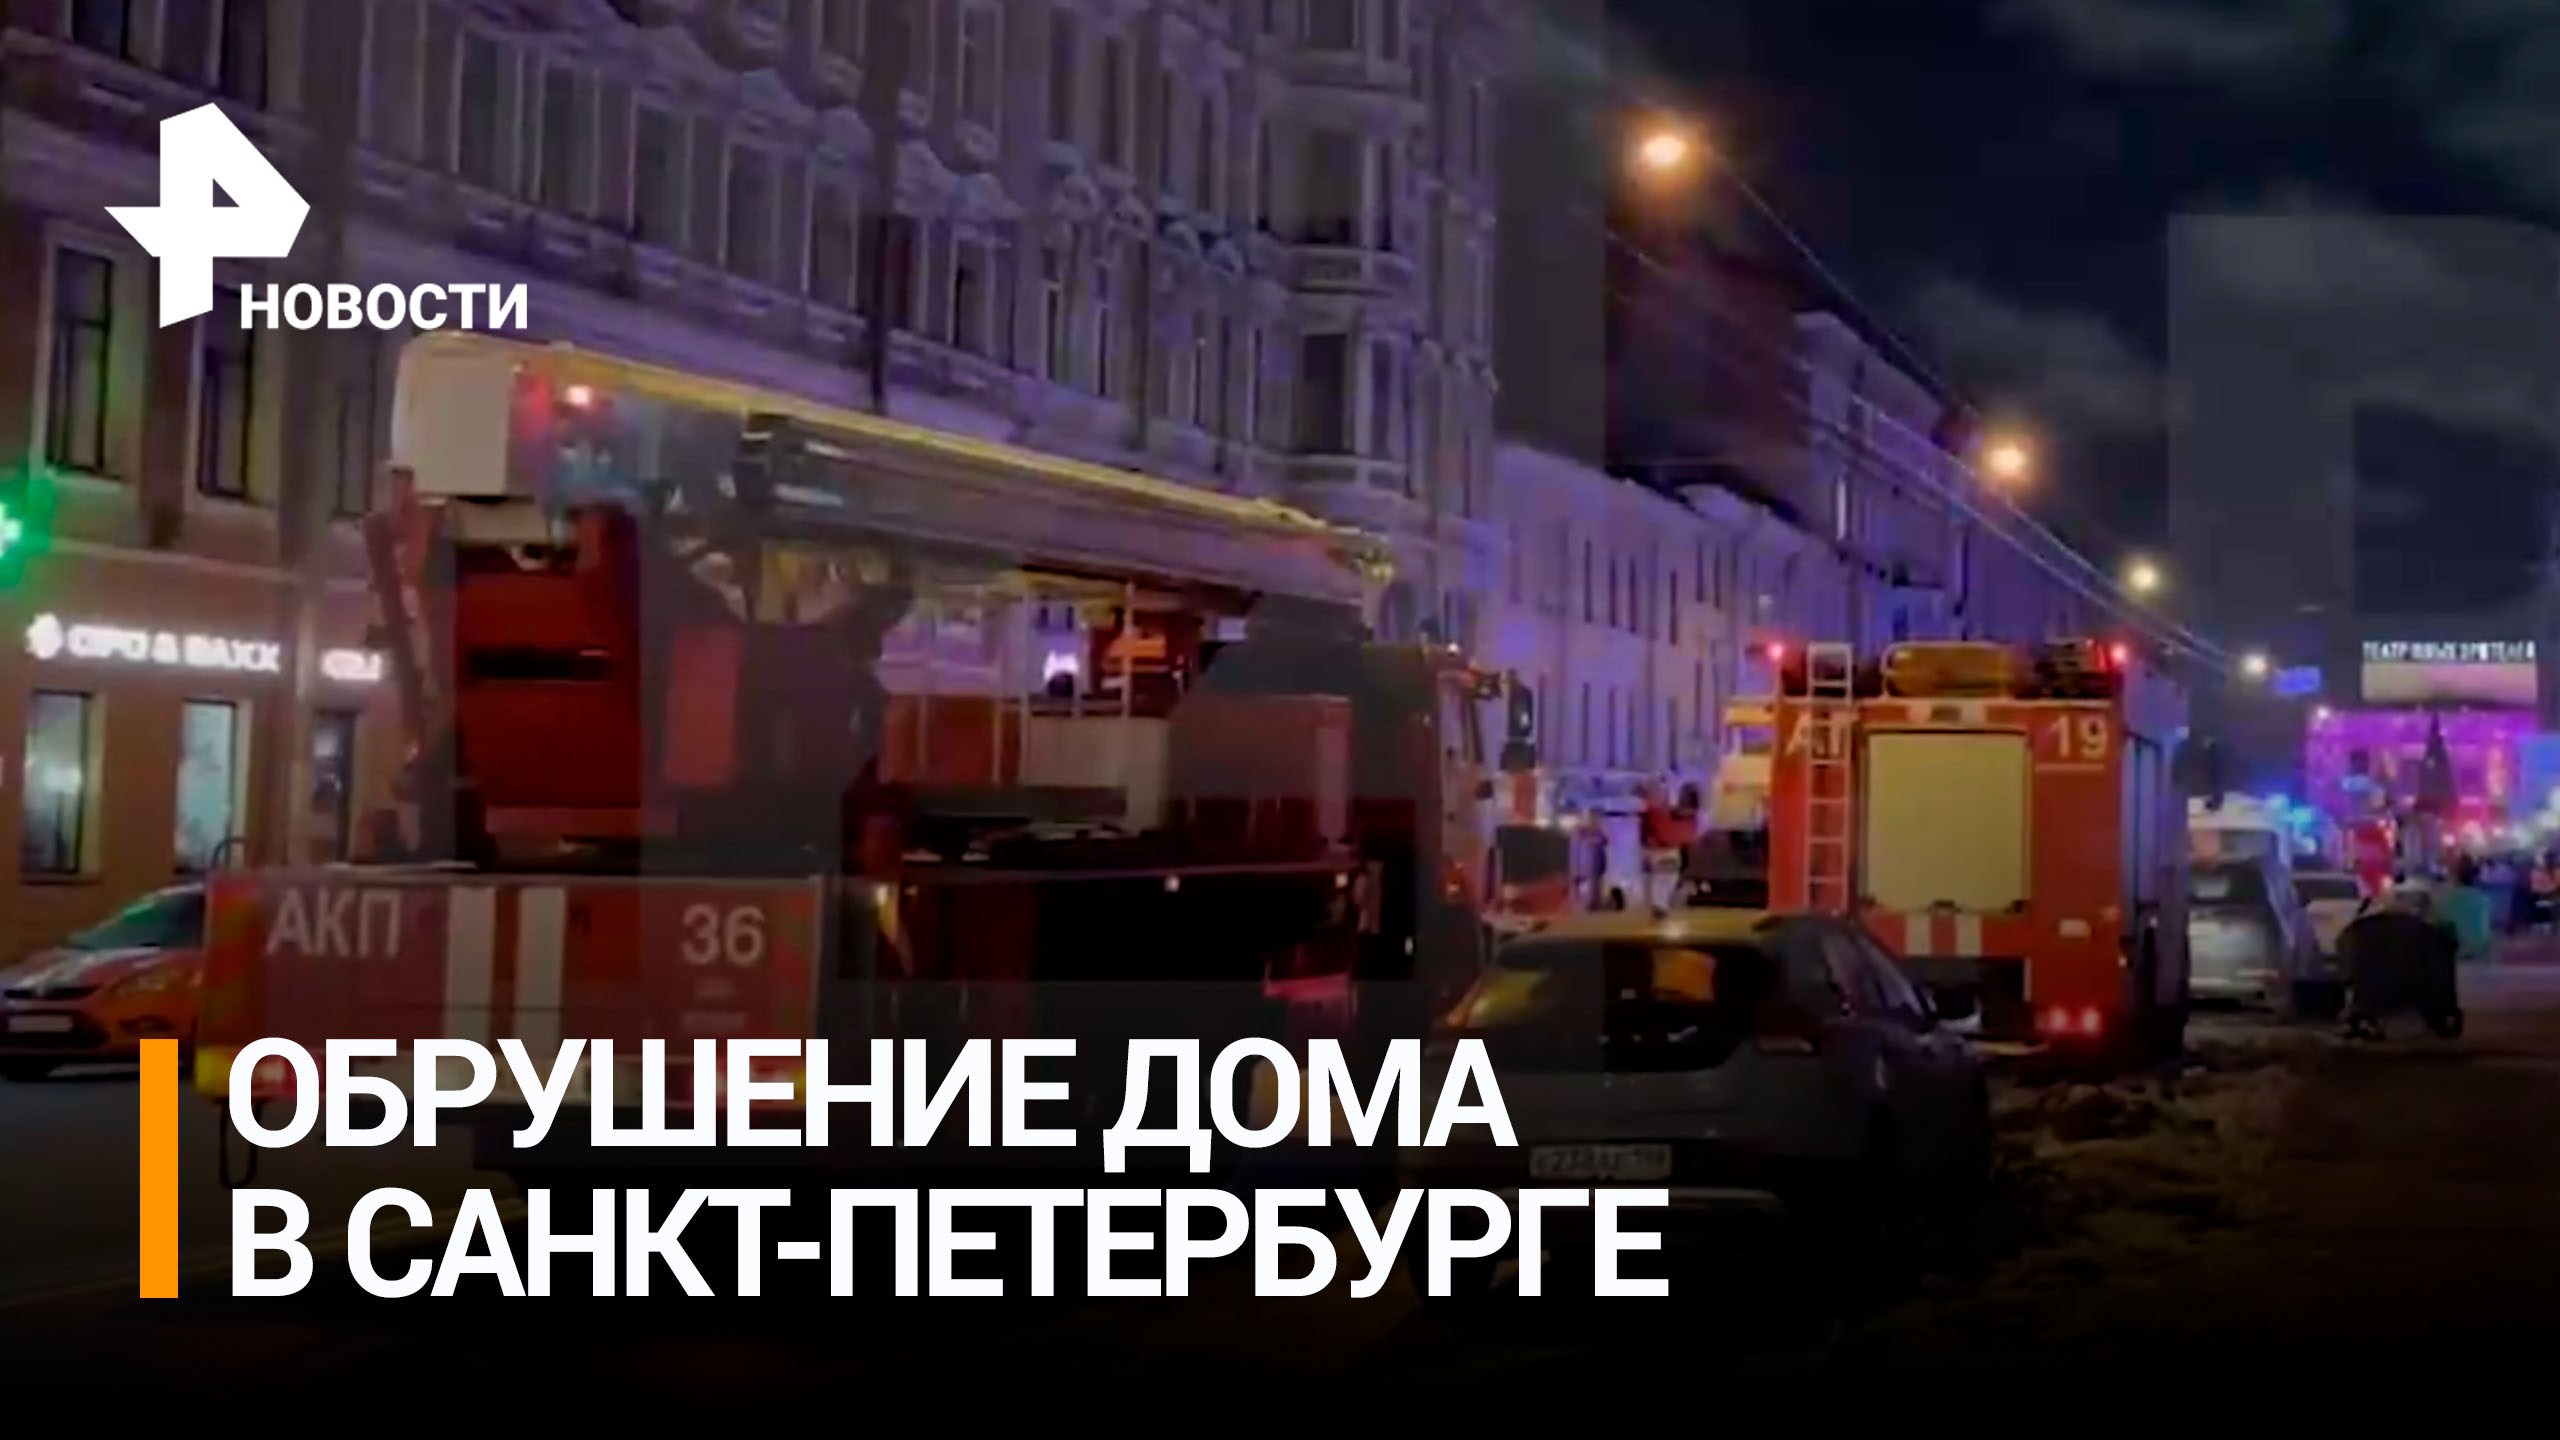 Часть шестиэтажного дома рухнула в центре Петербурга / РЕН Новости